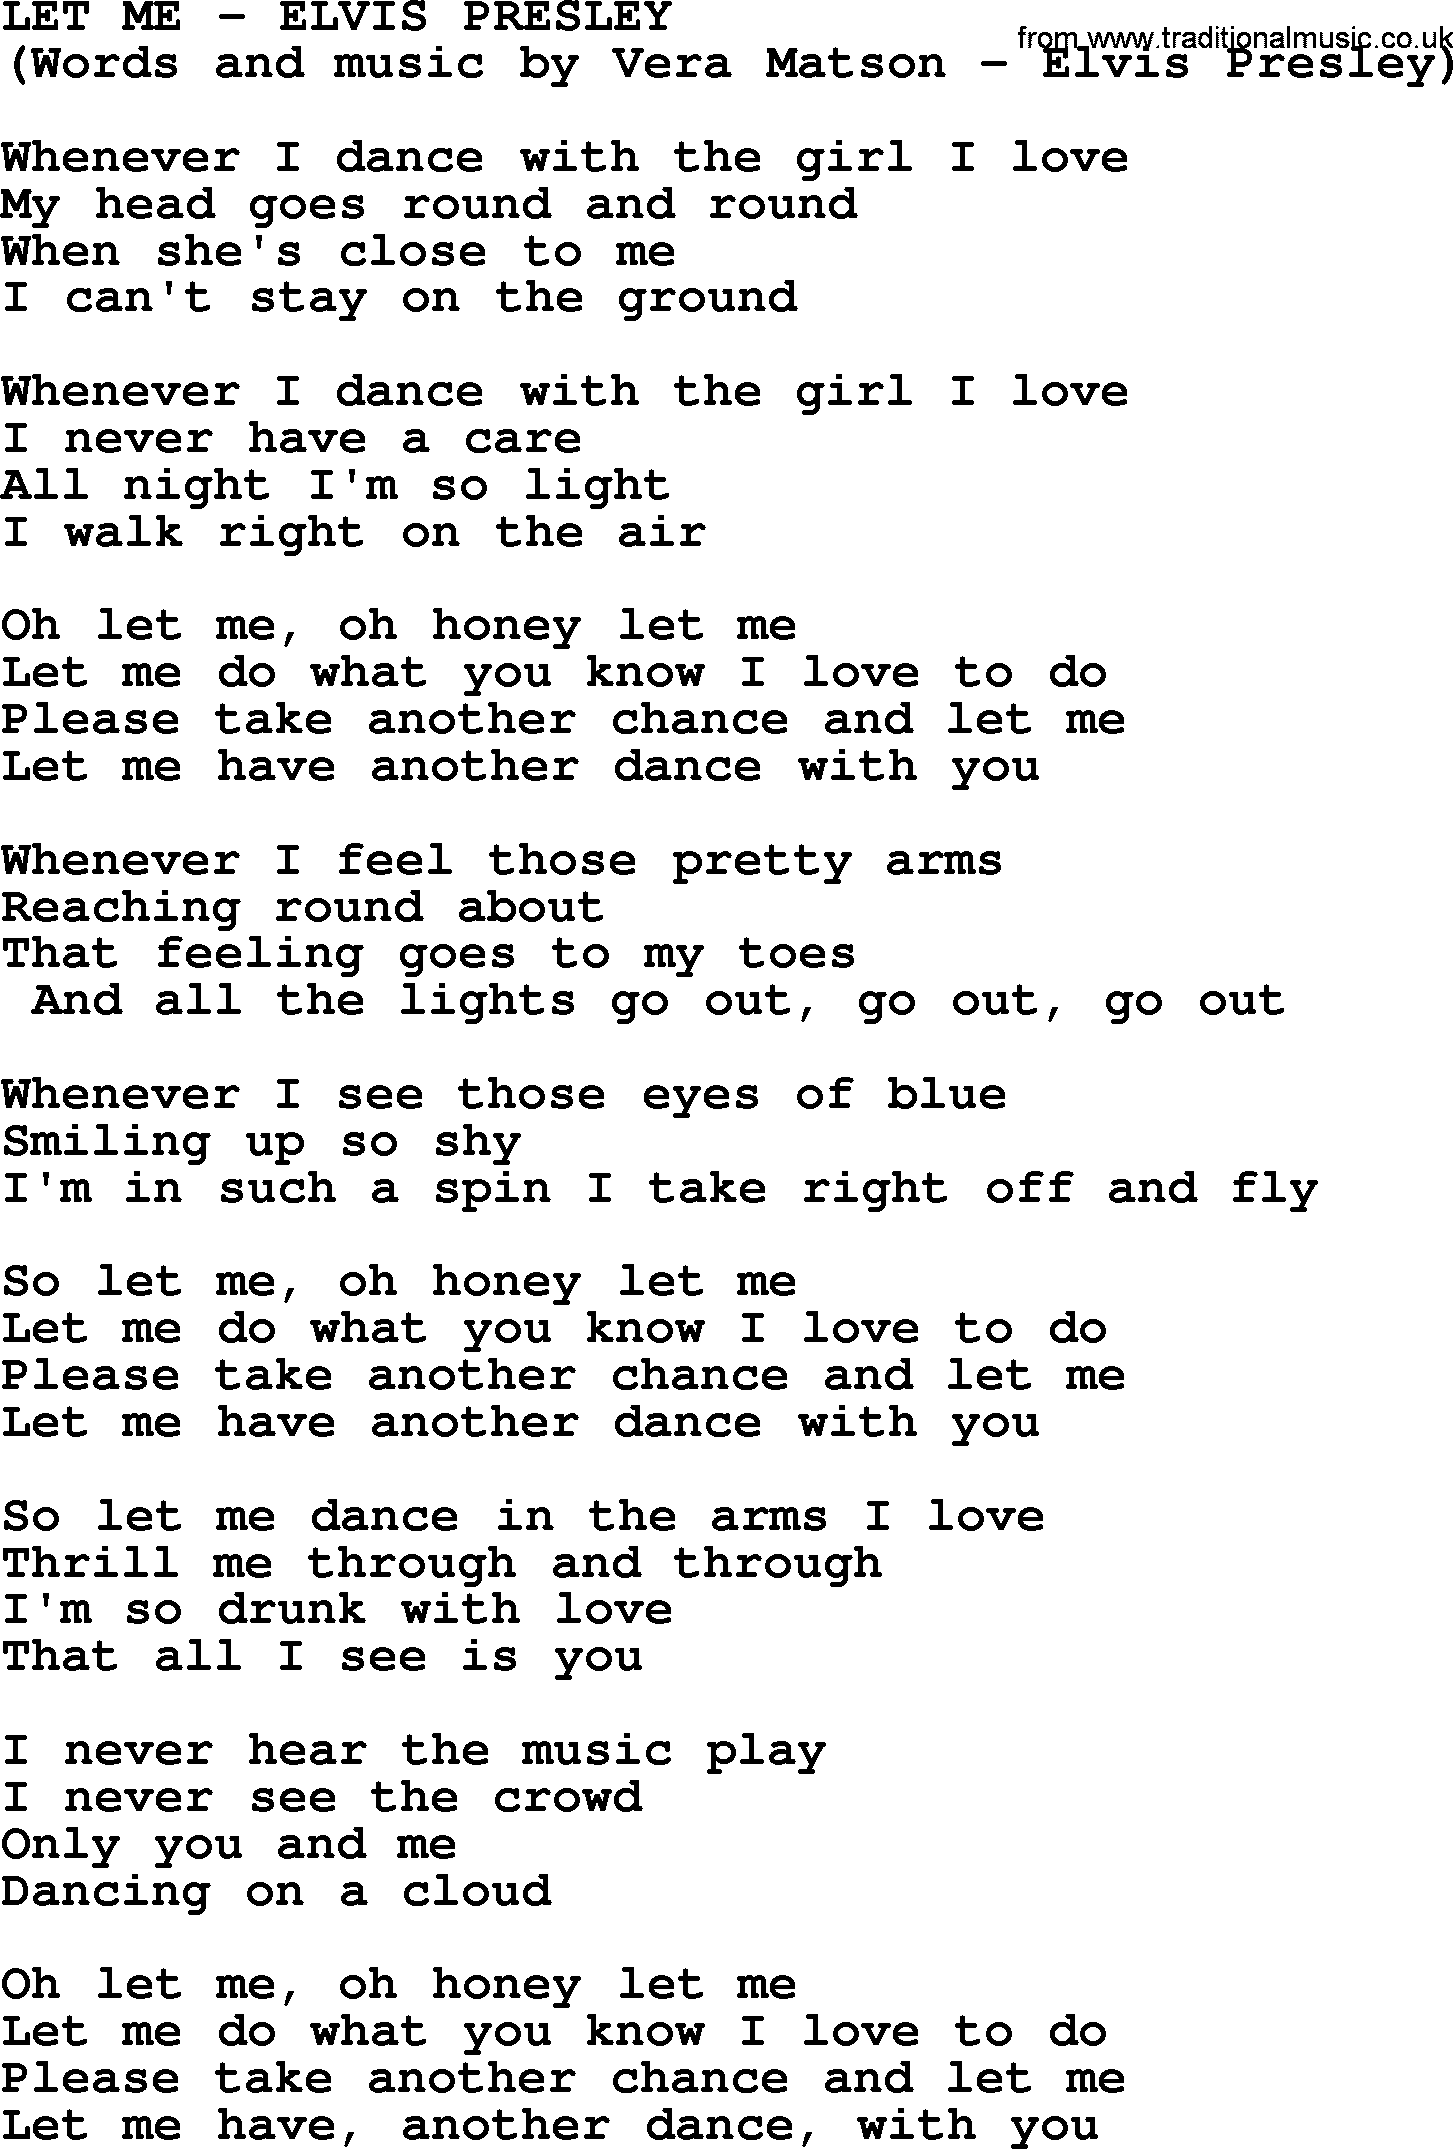 Elvis Presley song: Let Me lyrics